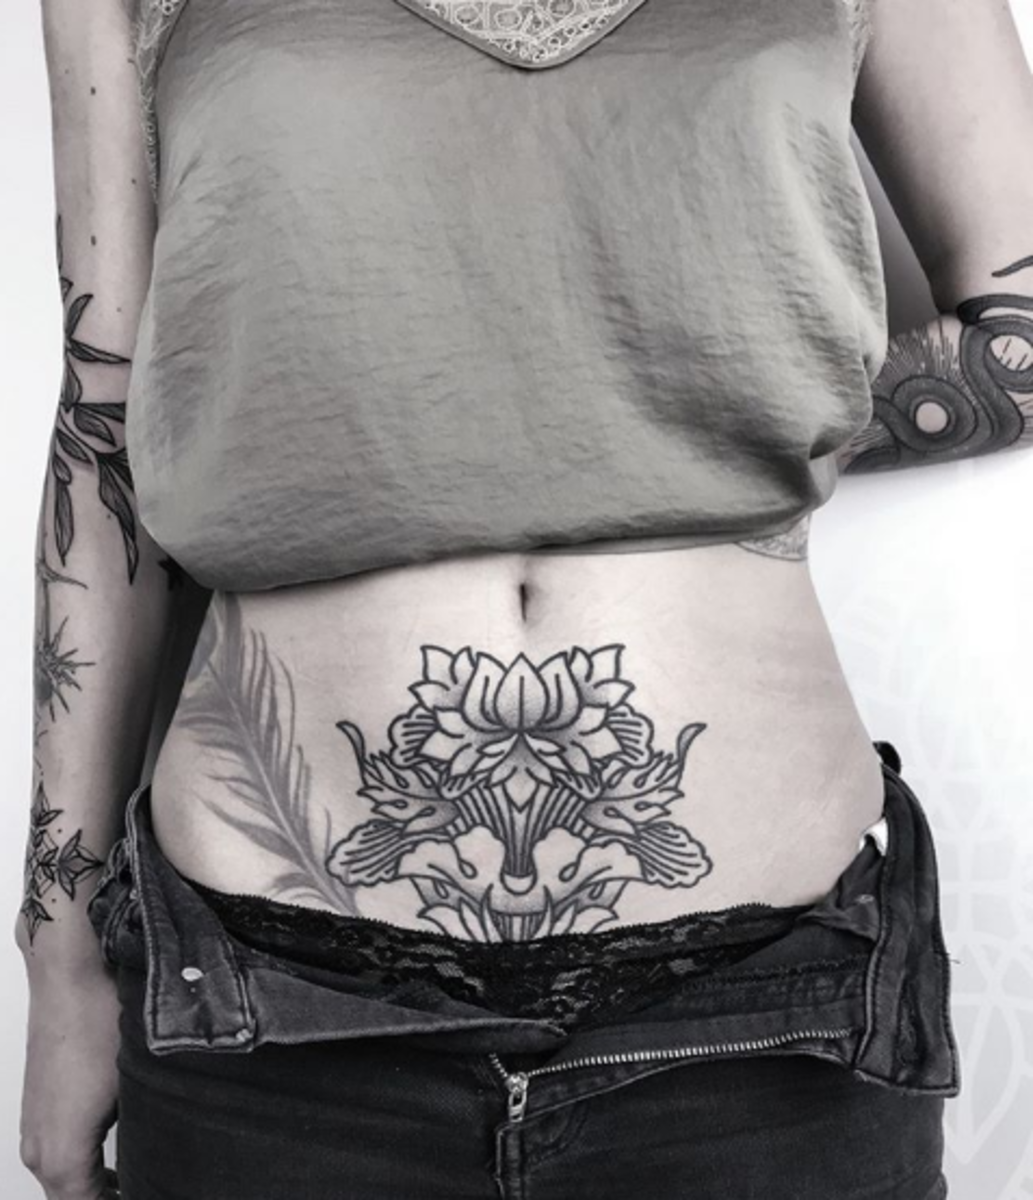 tatuointi, tatuoija, tatuointiidea, tatuointi -inspiraatio, tatuointisuunnittelu, muste, inkedmag, tatuointi naisille, naisten tatuointi